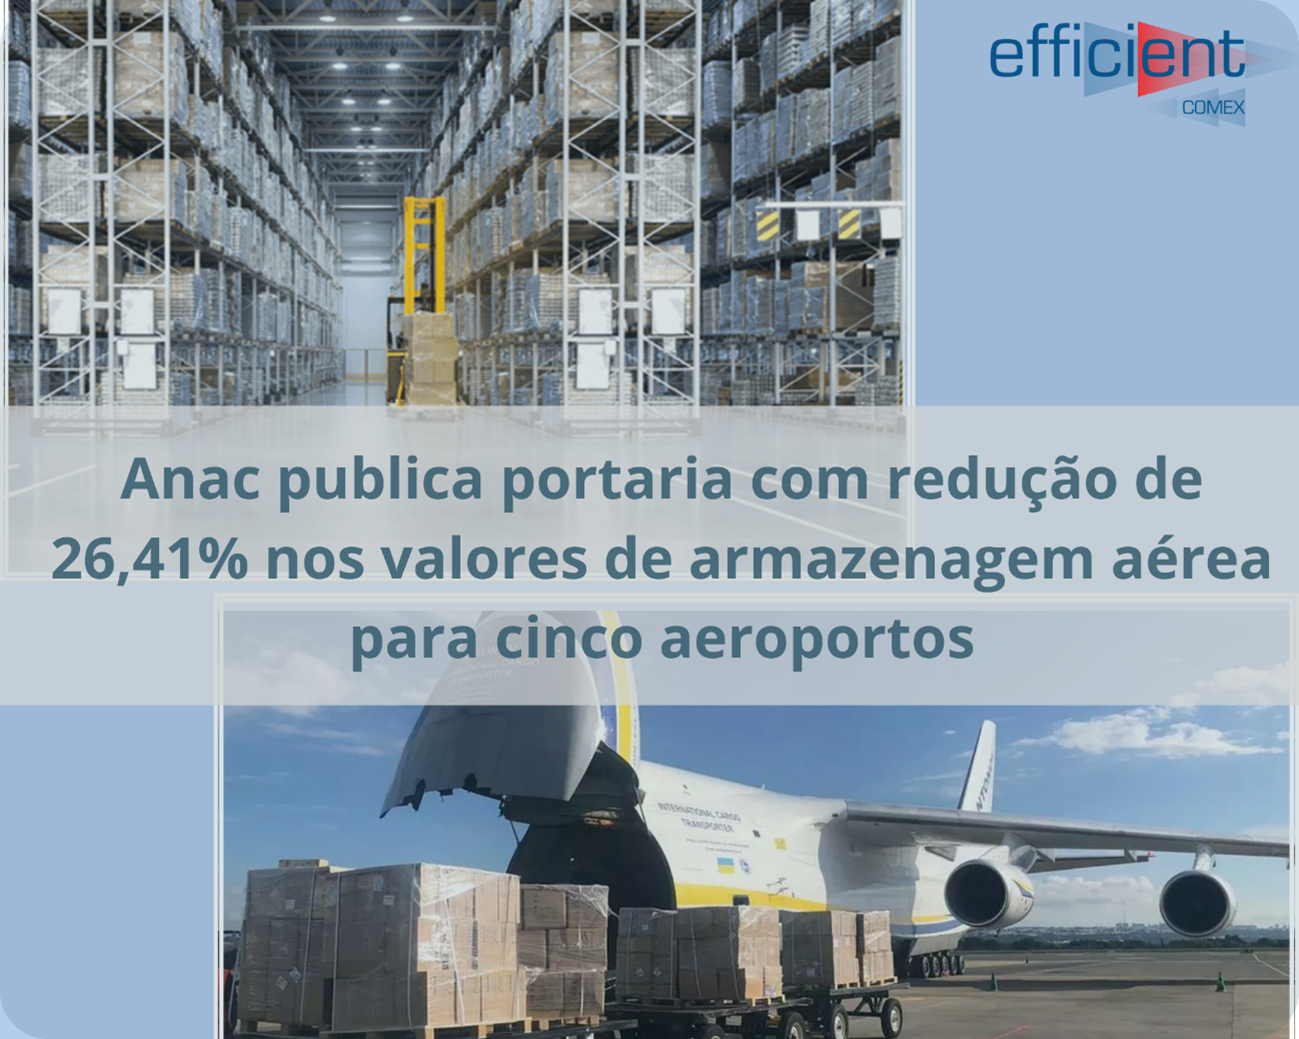 Anac publica portaria com redução de 26,41% nos valores de armazenagem aérea para cinco aeroportos